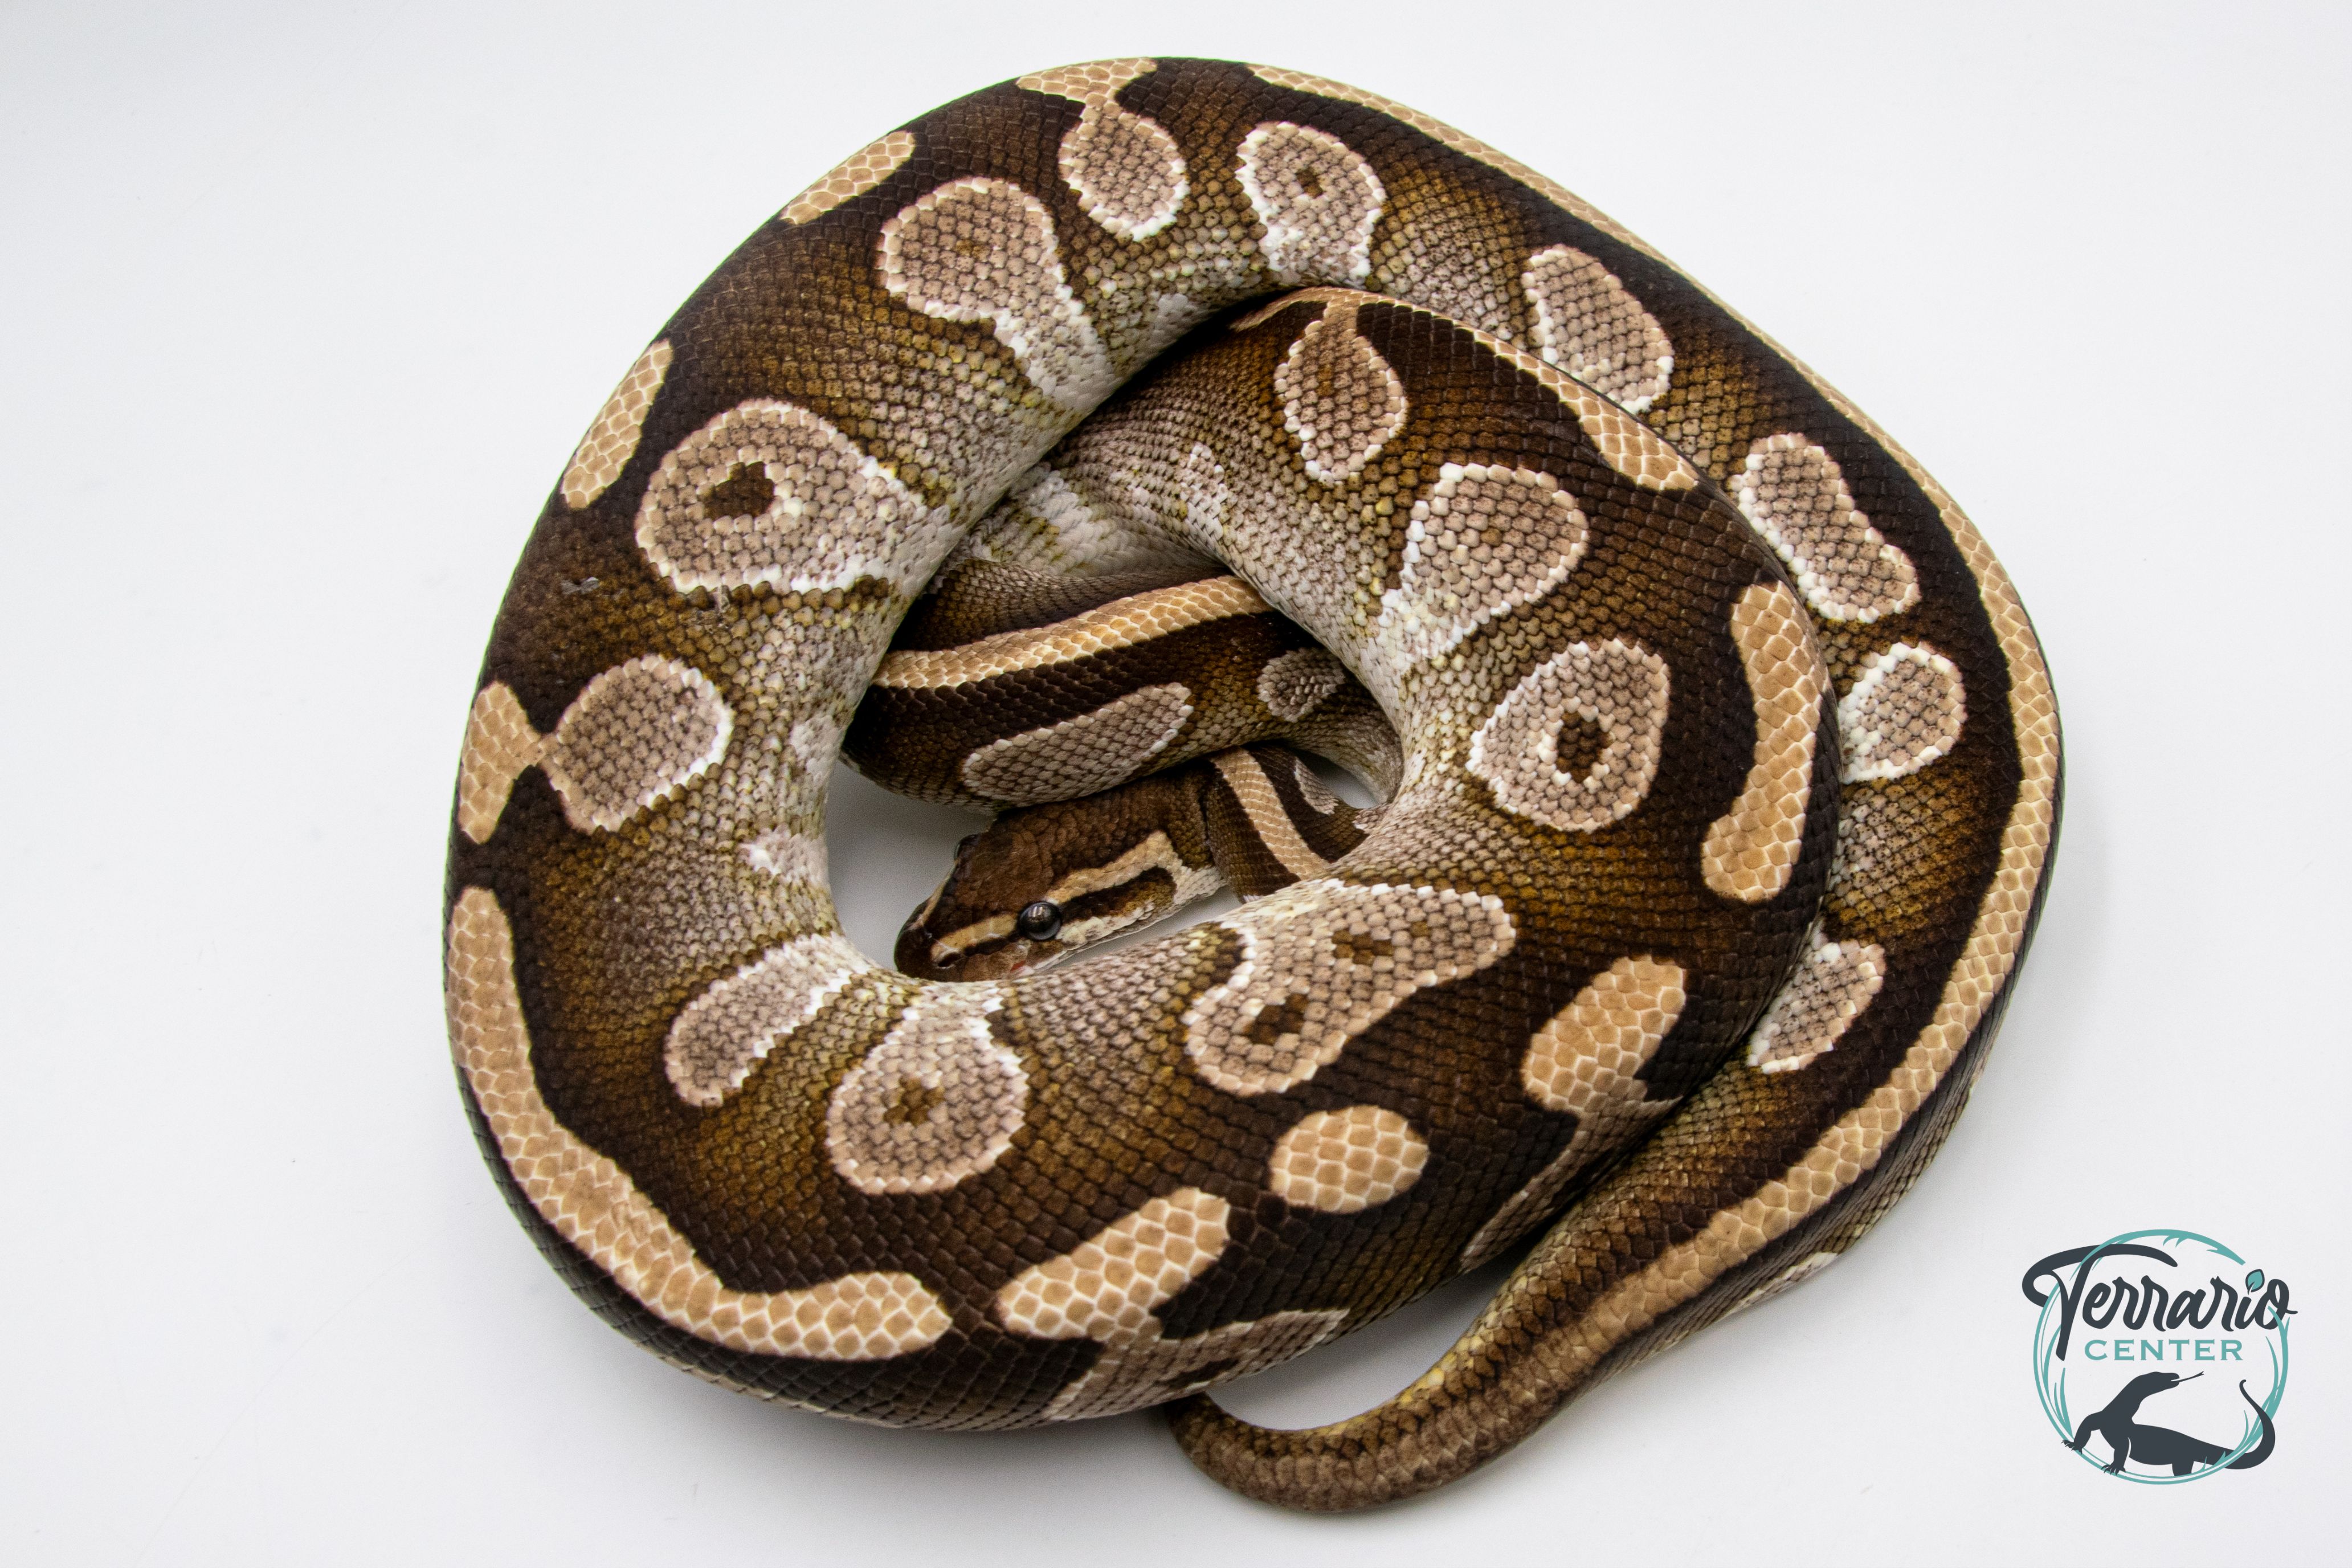 Python royal - Python regius Mojave - Adulte